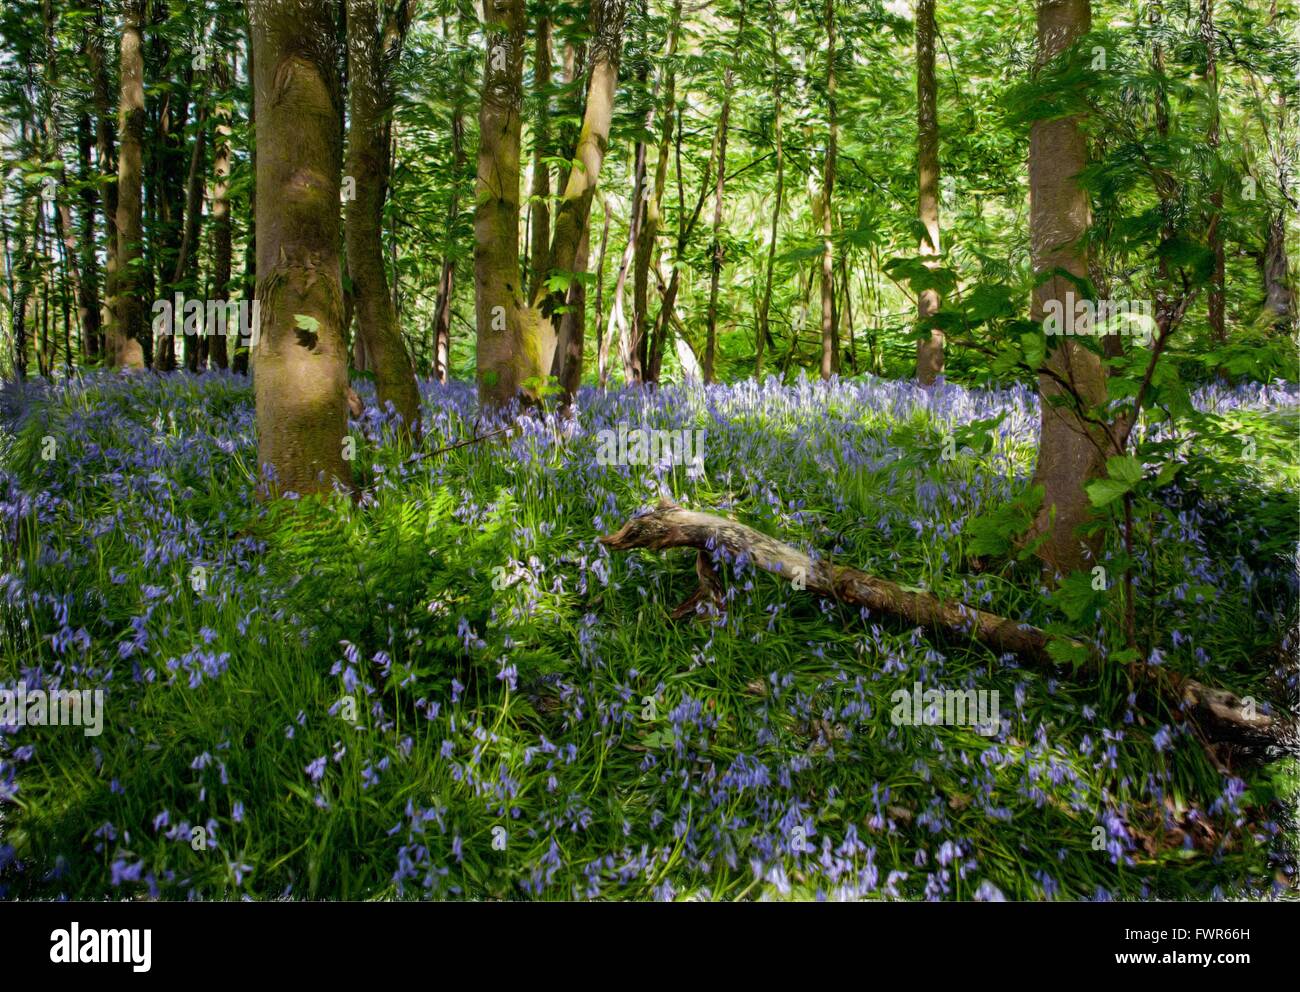 Stile della pittura immagine di bluebell wood nella primavera,con log, alberi,e raggi di luce Foto Stock